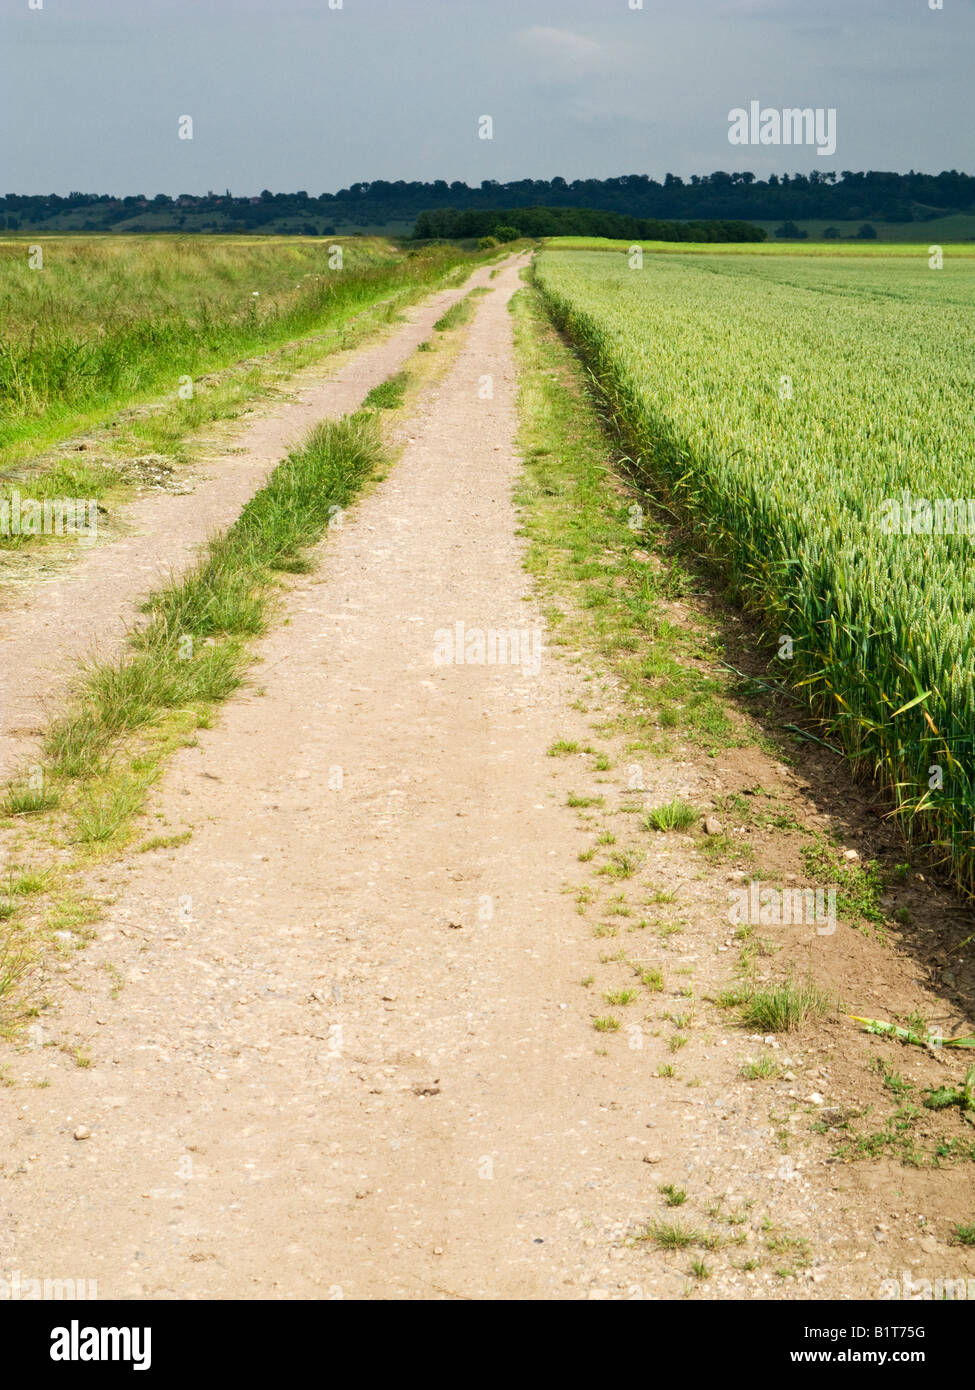 Chemin chemin rural à travers champs de la récolte dans le plat paysage ouvert de l'East Yorkshire, England, UK Banque D'Images